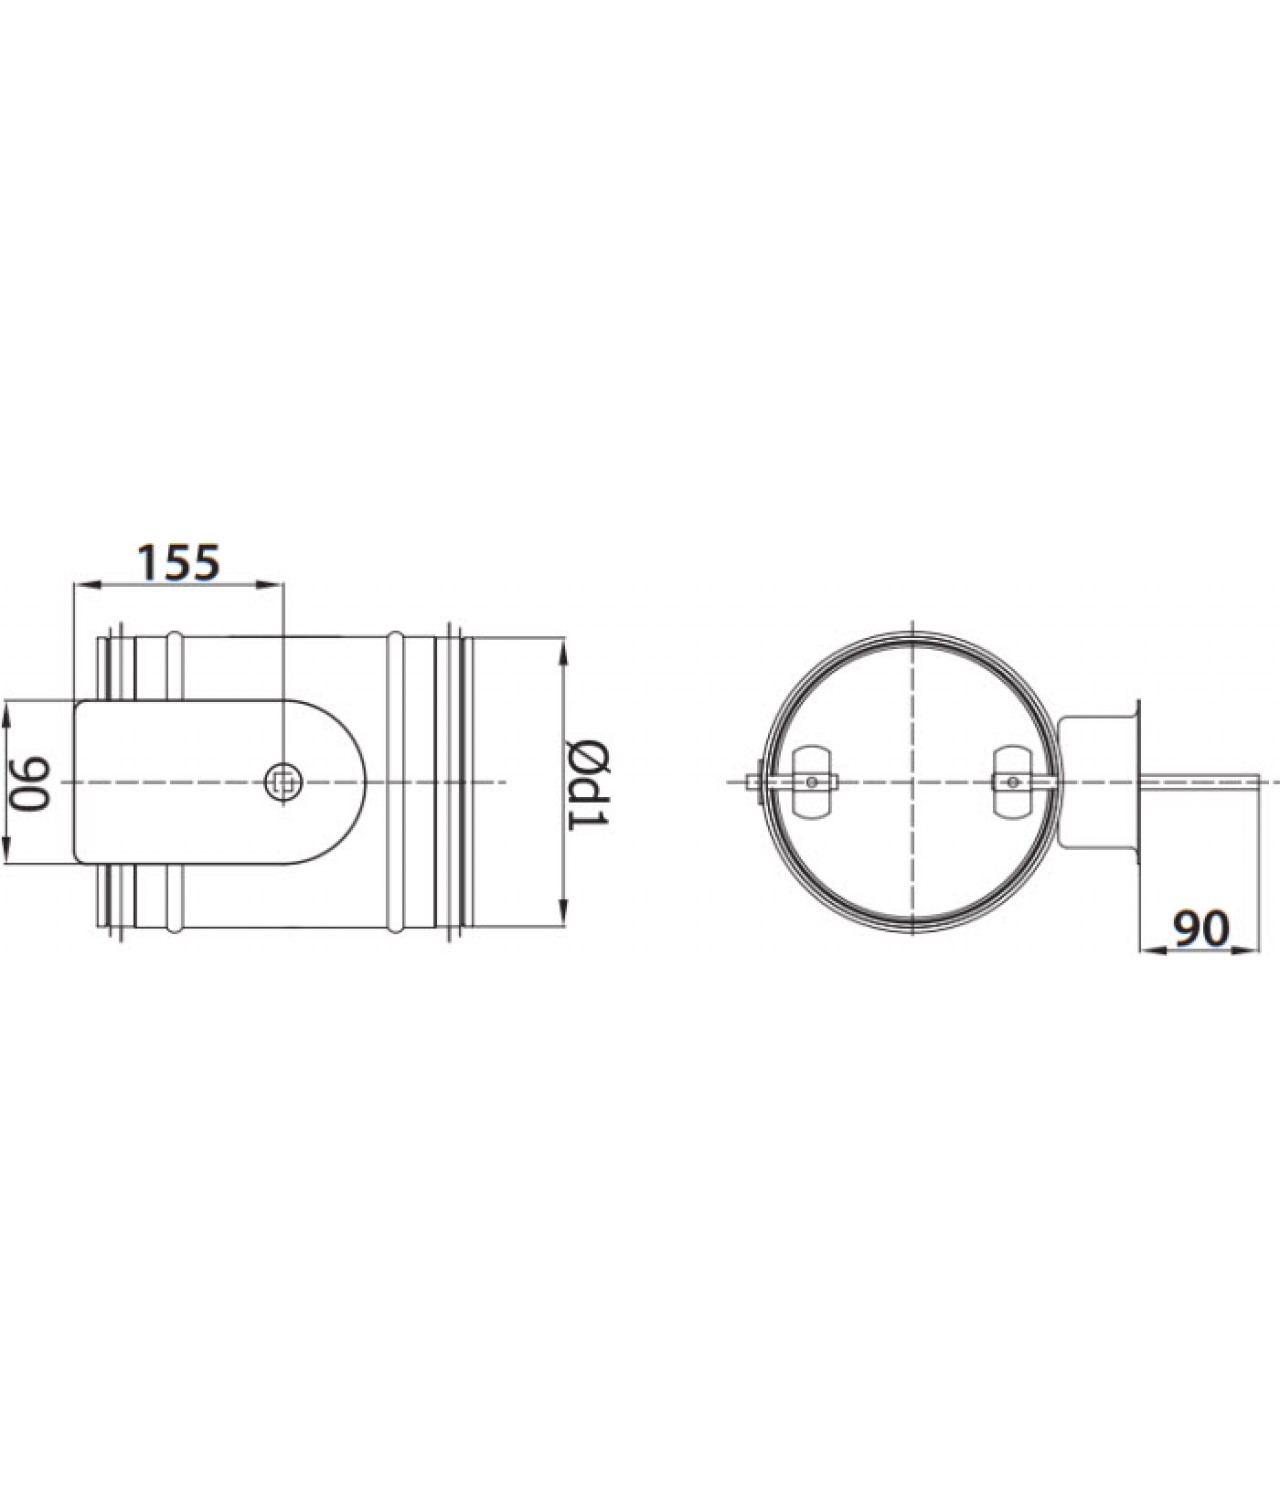 Воздушные клапаны для электроприводов SEPG - чертеж